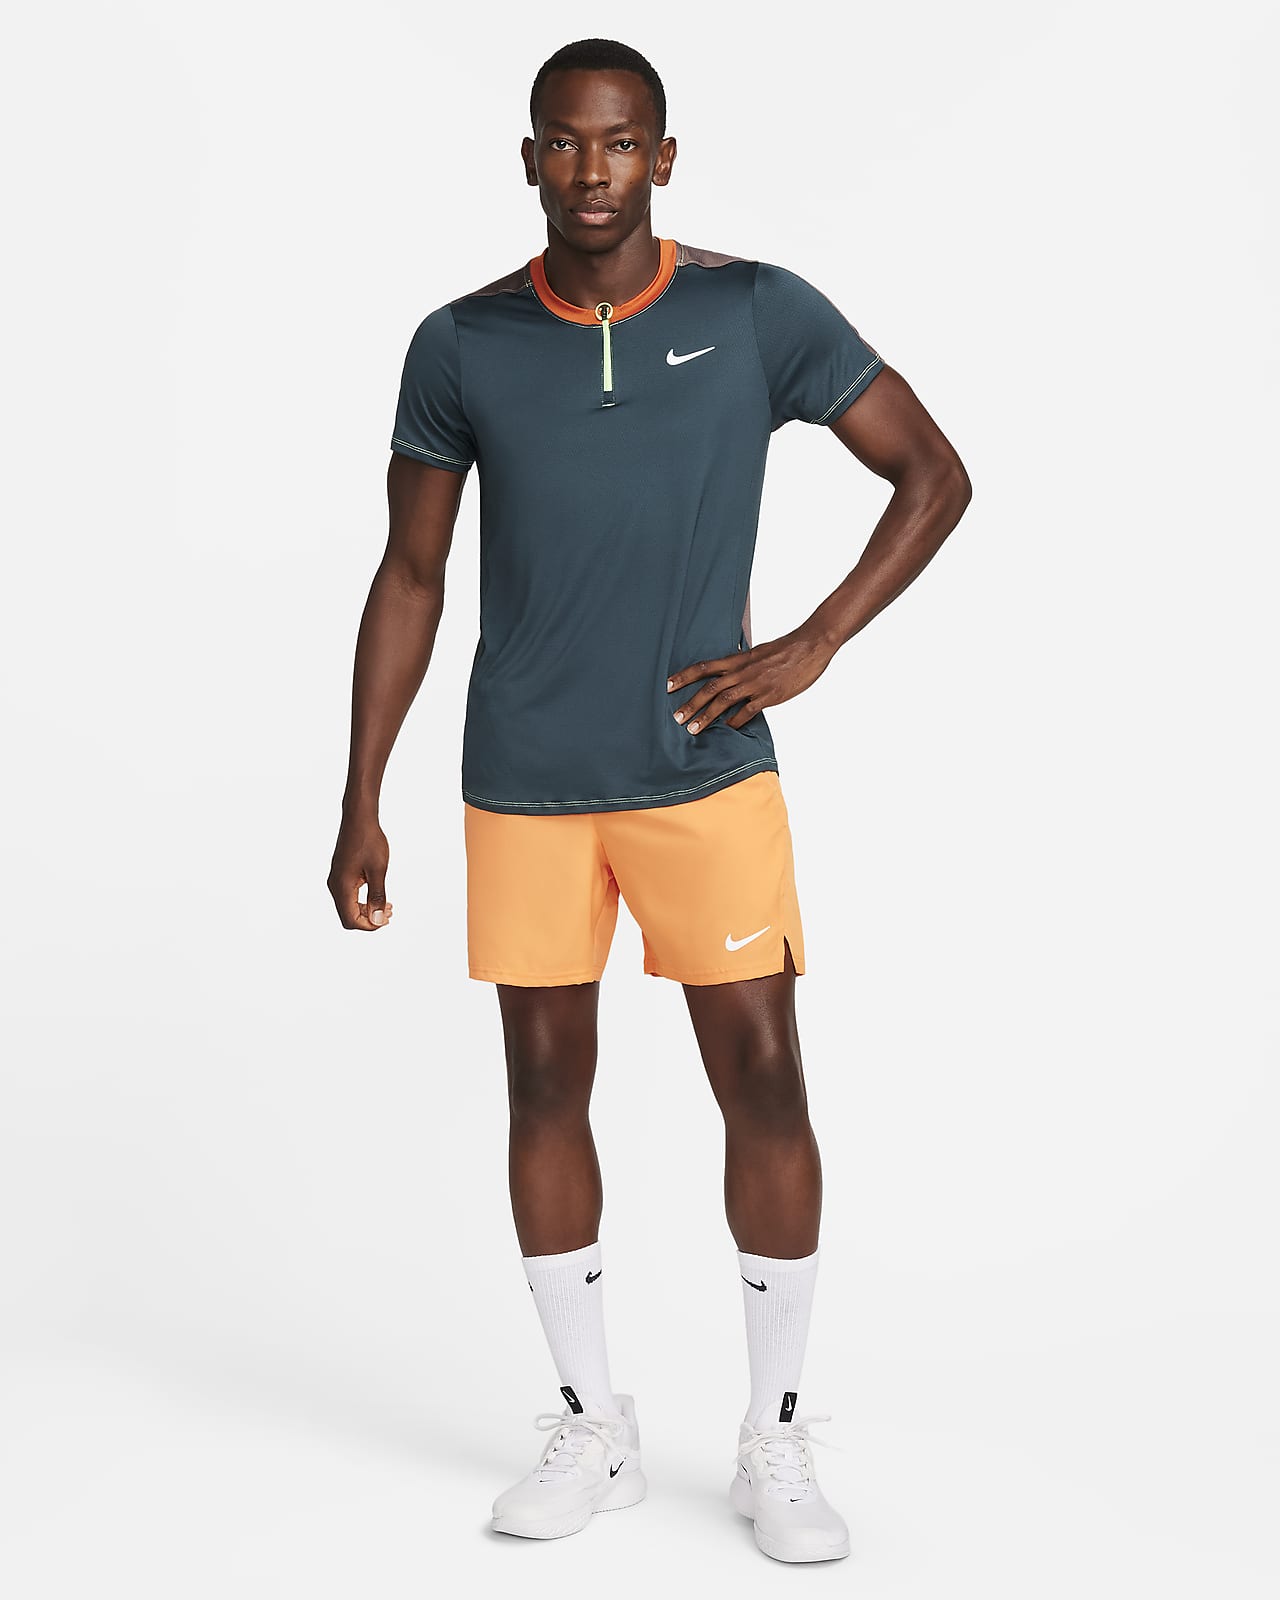 NikeCourt Dri-FIT Advantage Men's Tennis Polo. Nike LU